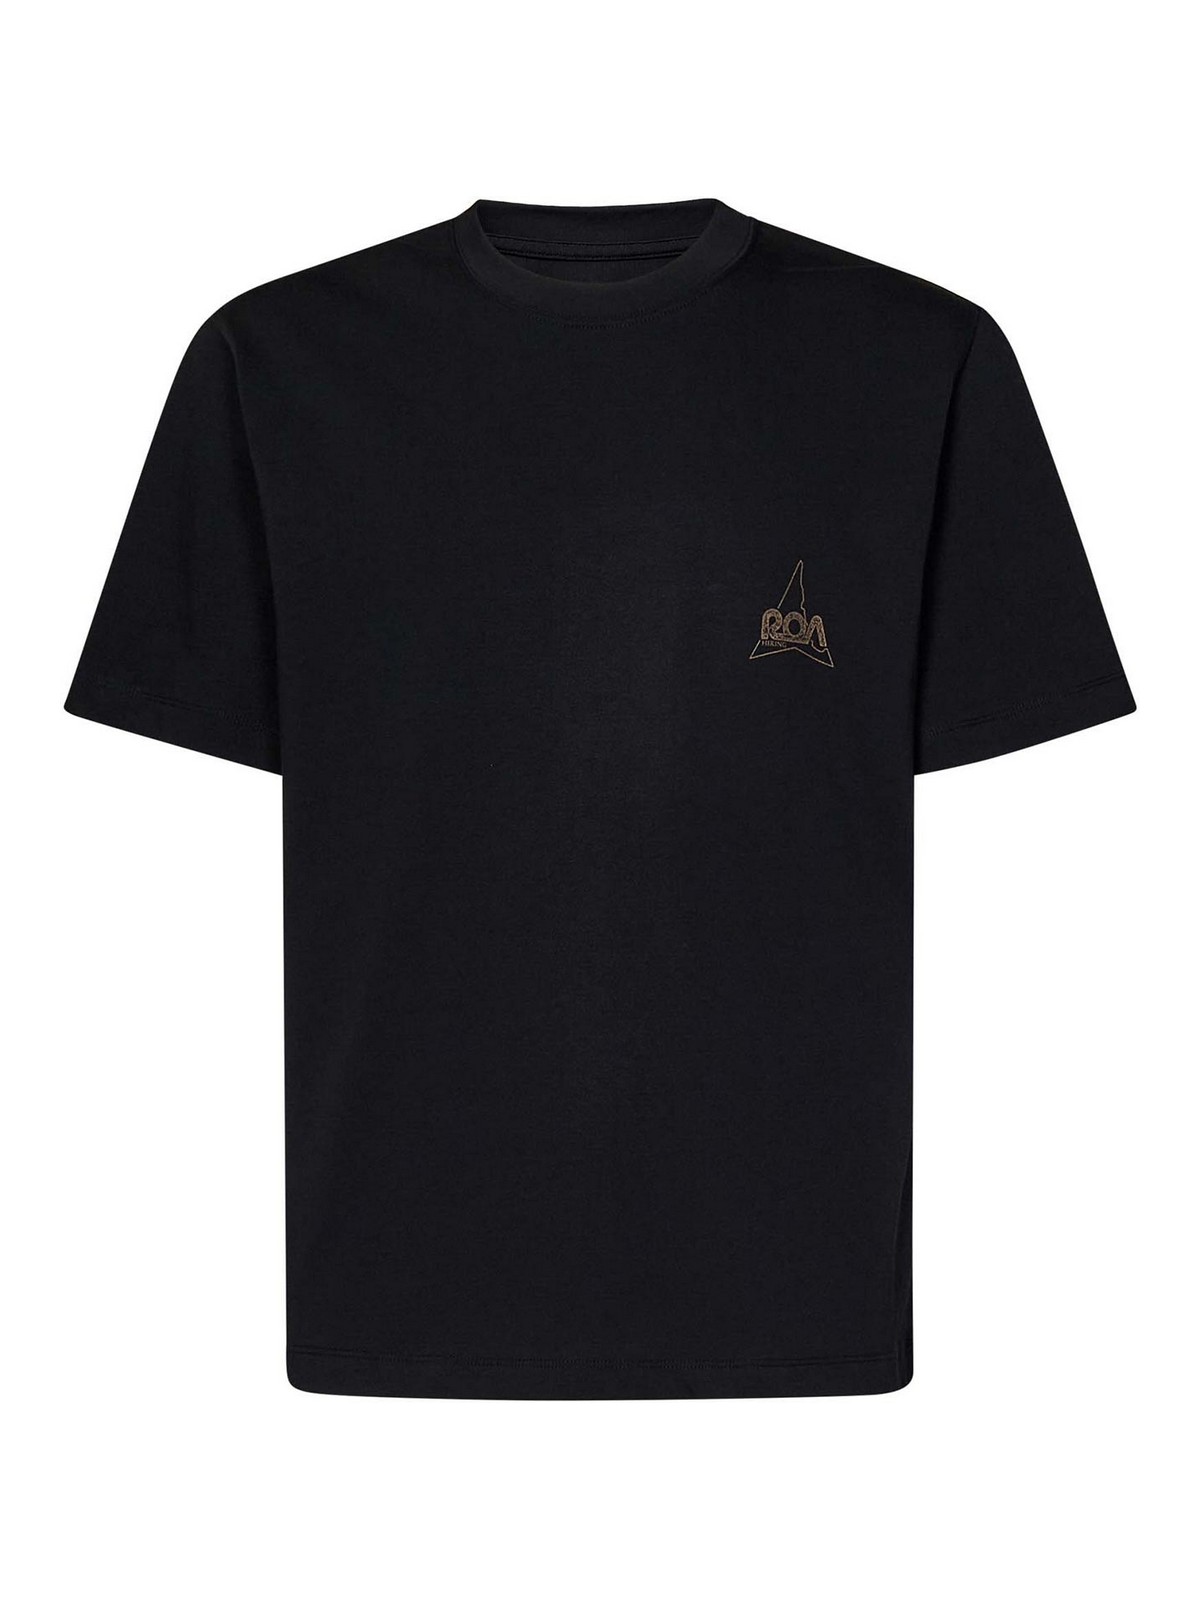 Shop Roa Camiseta - Negro In Black